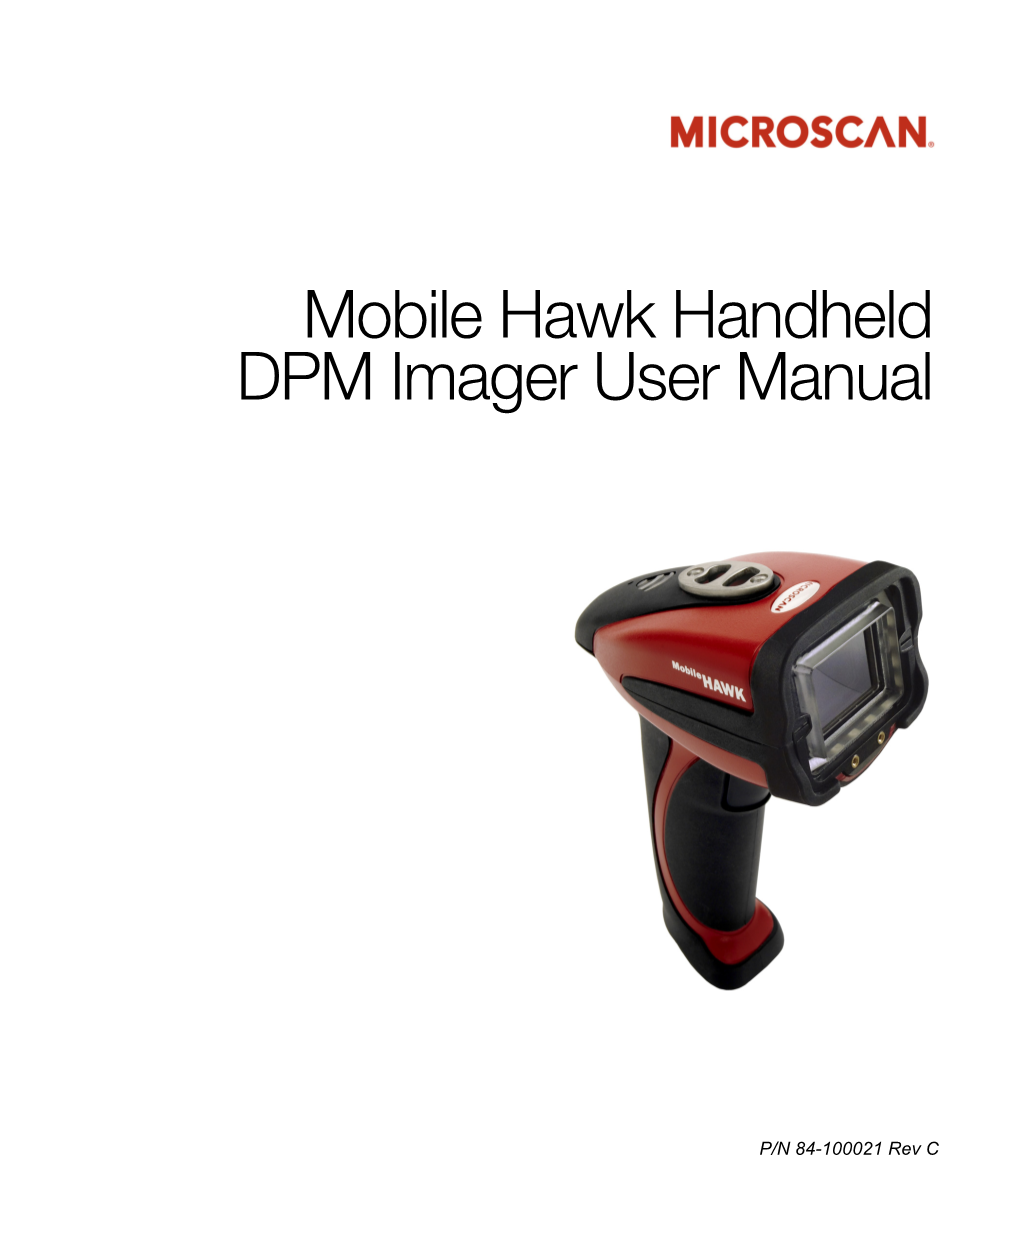 Mobile Hawk Handheld DPM Imager User Manual